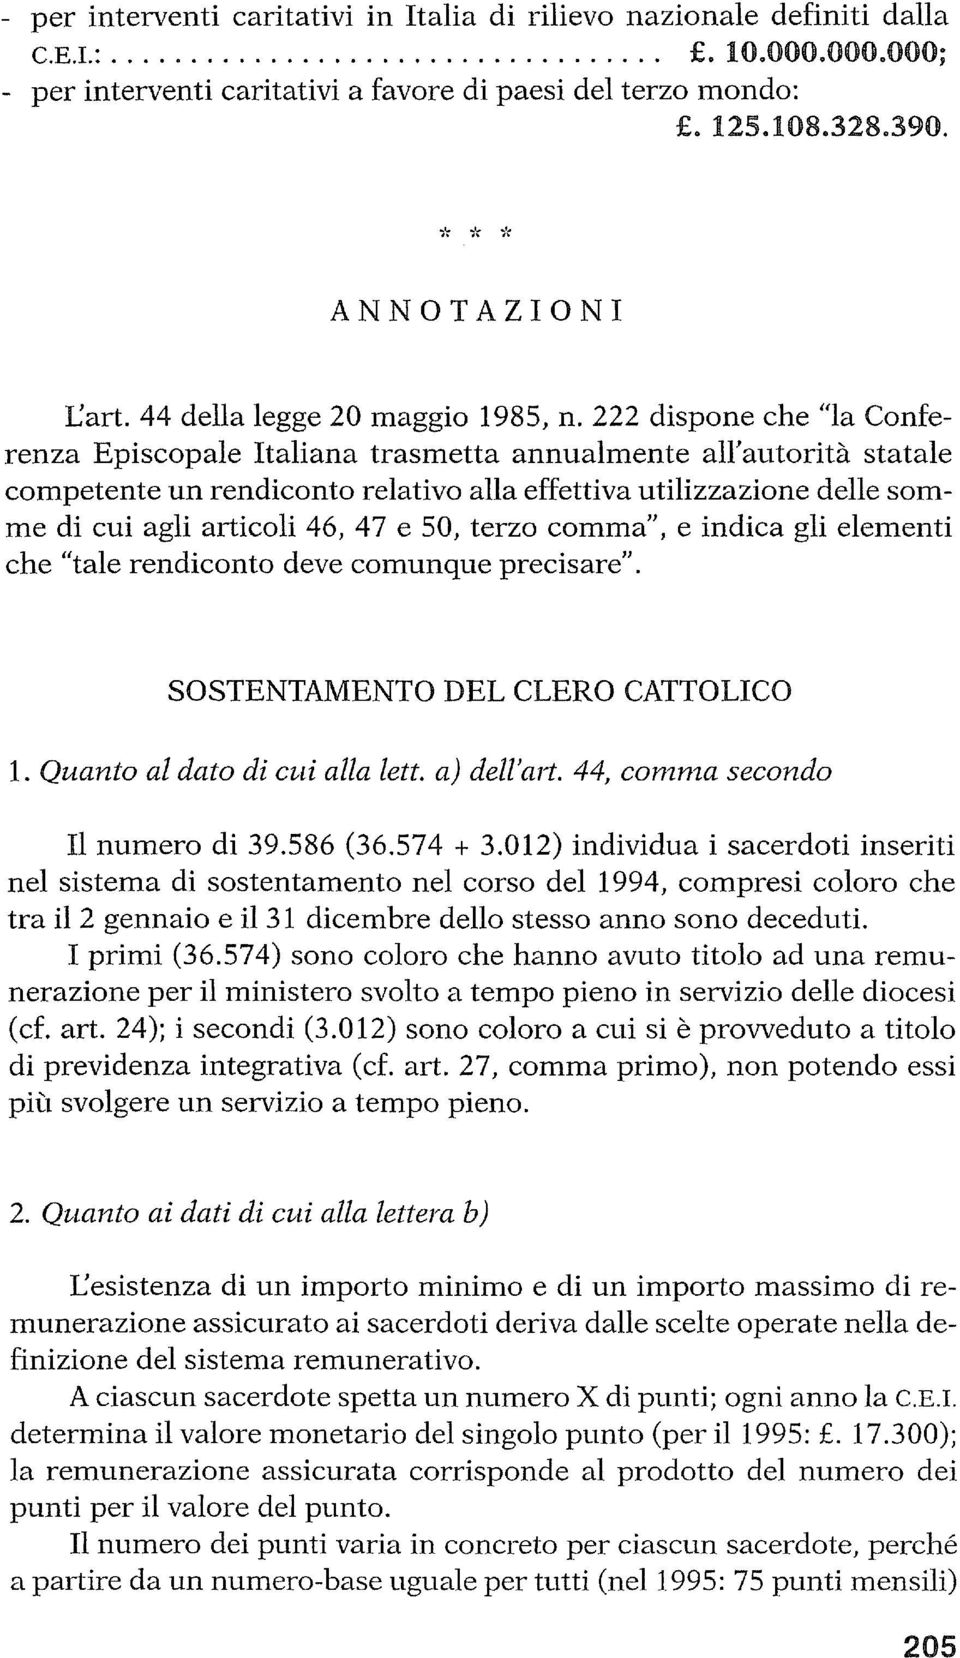 222 dispone che "la Conferenza Episcopale Italiana trasmetta annualmente all'autorità statale competente un rendiconto relativo alla effettiva utilizzazione delle somme di cui agli articoli 46, 47 e